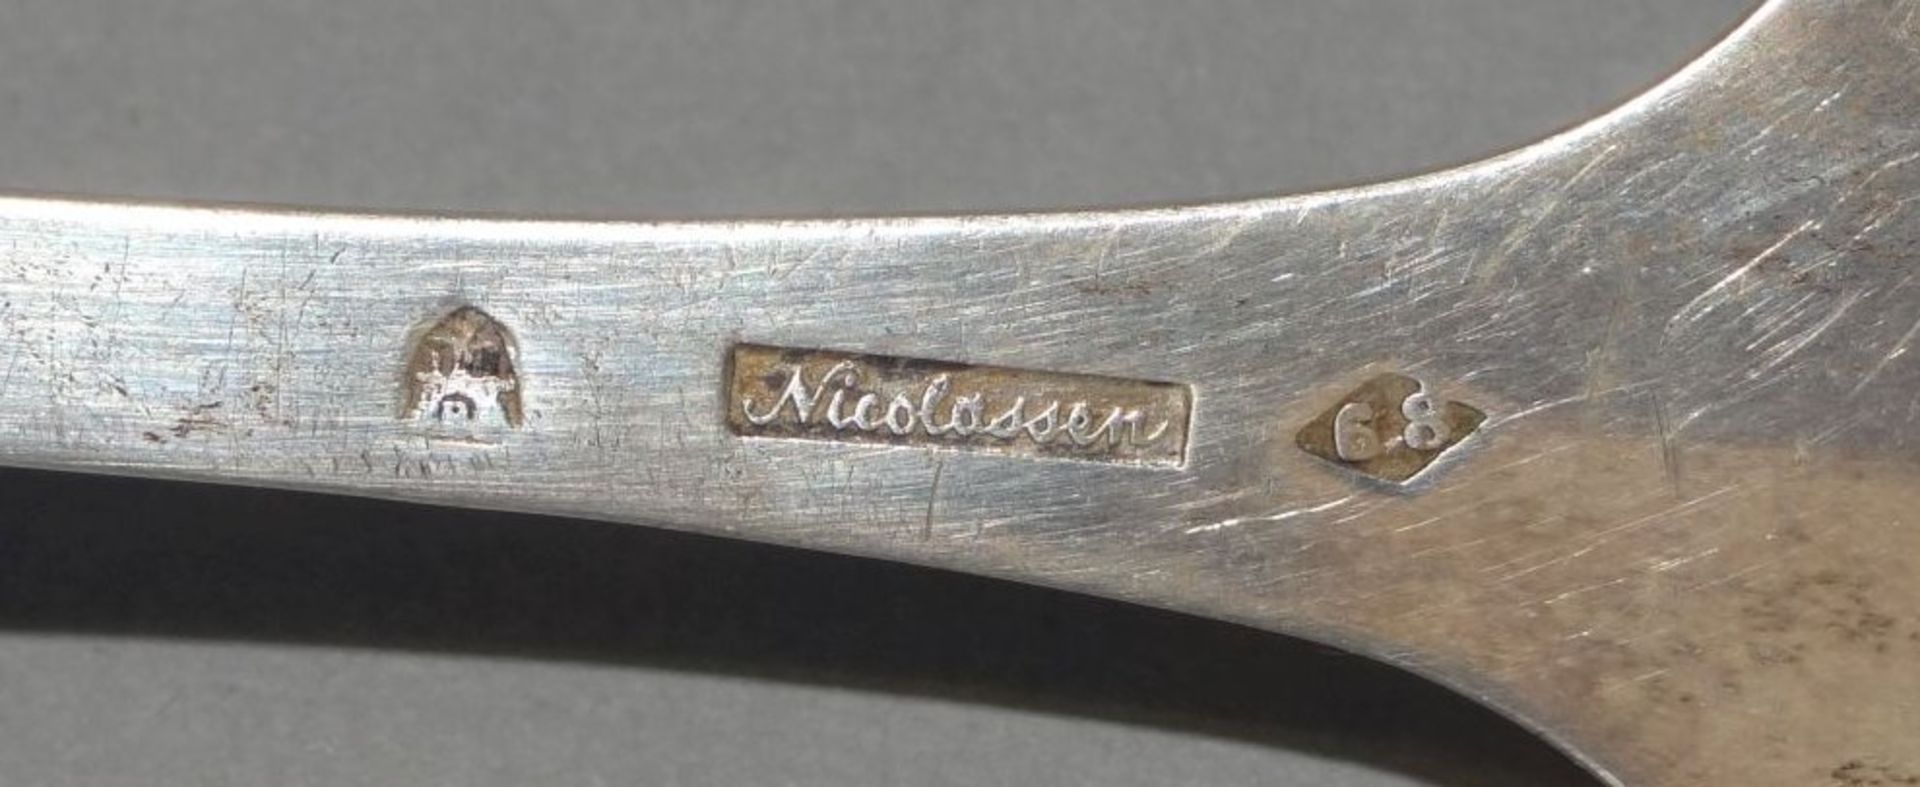 Silber-Streulöffel,Kopenhagen, Meister Nicolassen, L-20 cm, 40 gr - Bild 6 aus 6